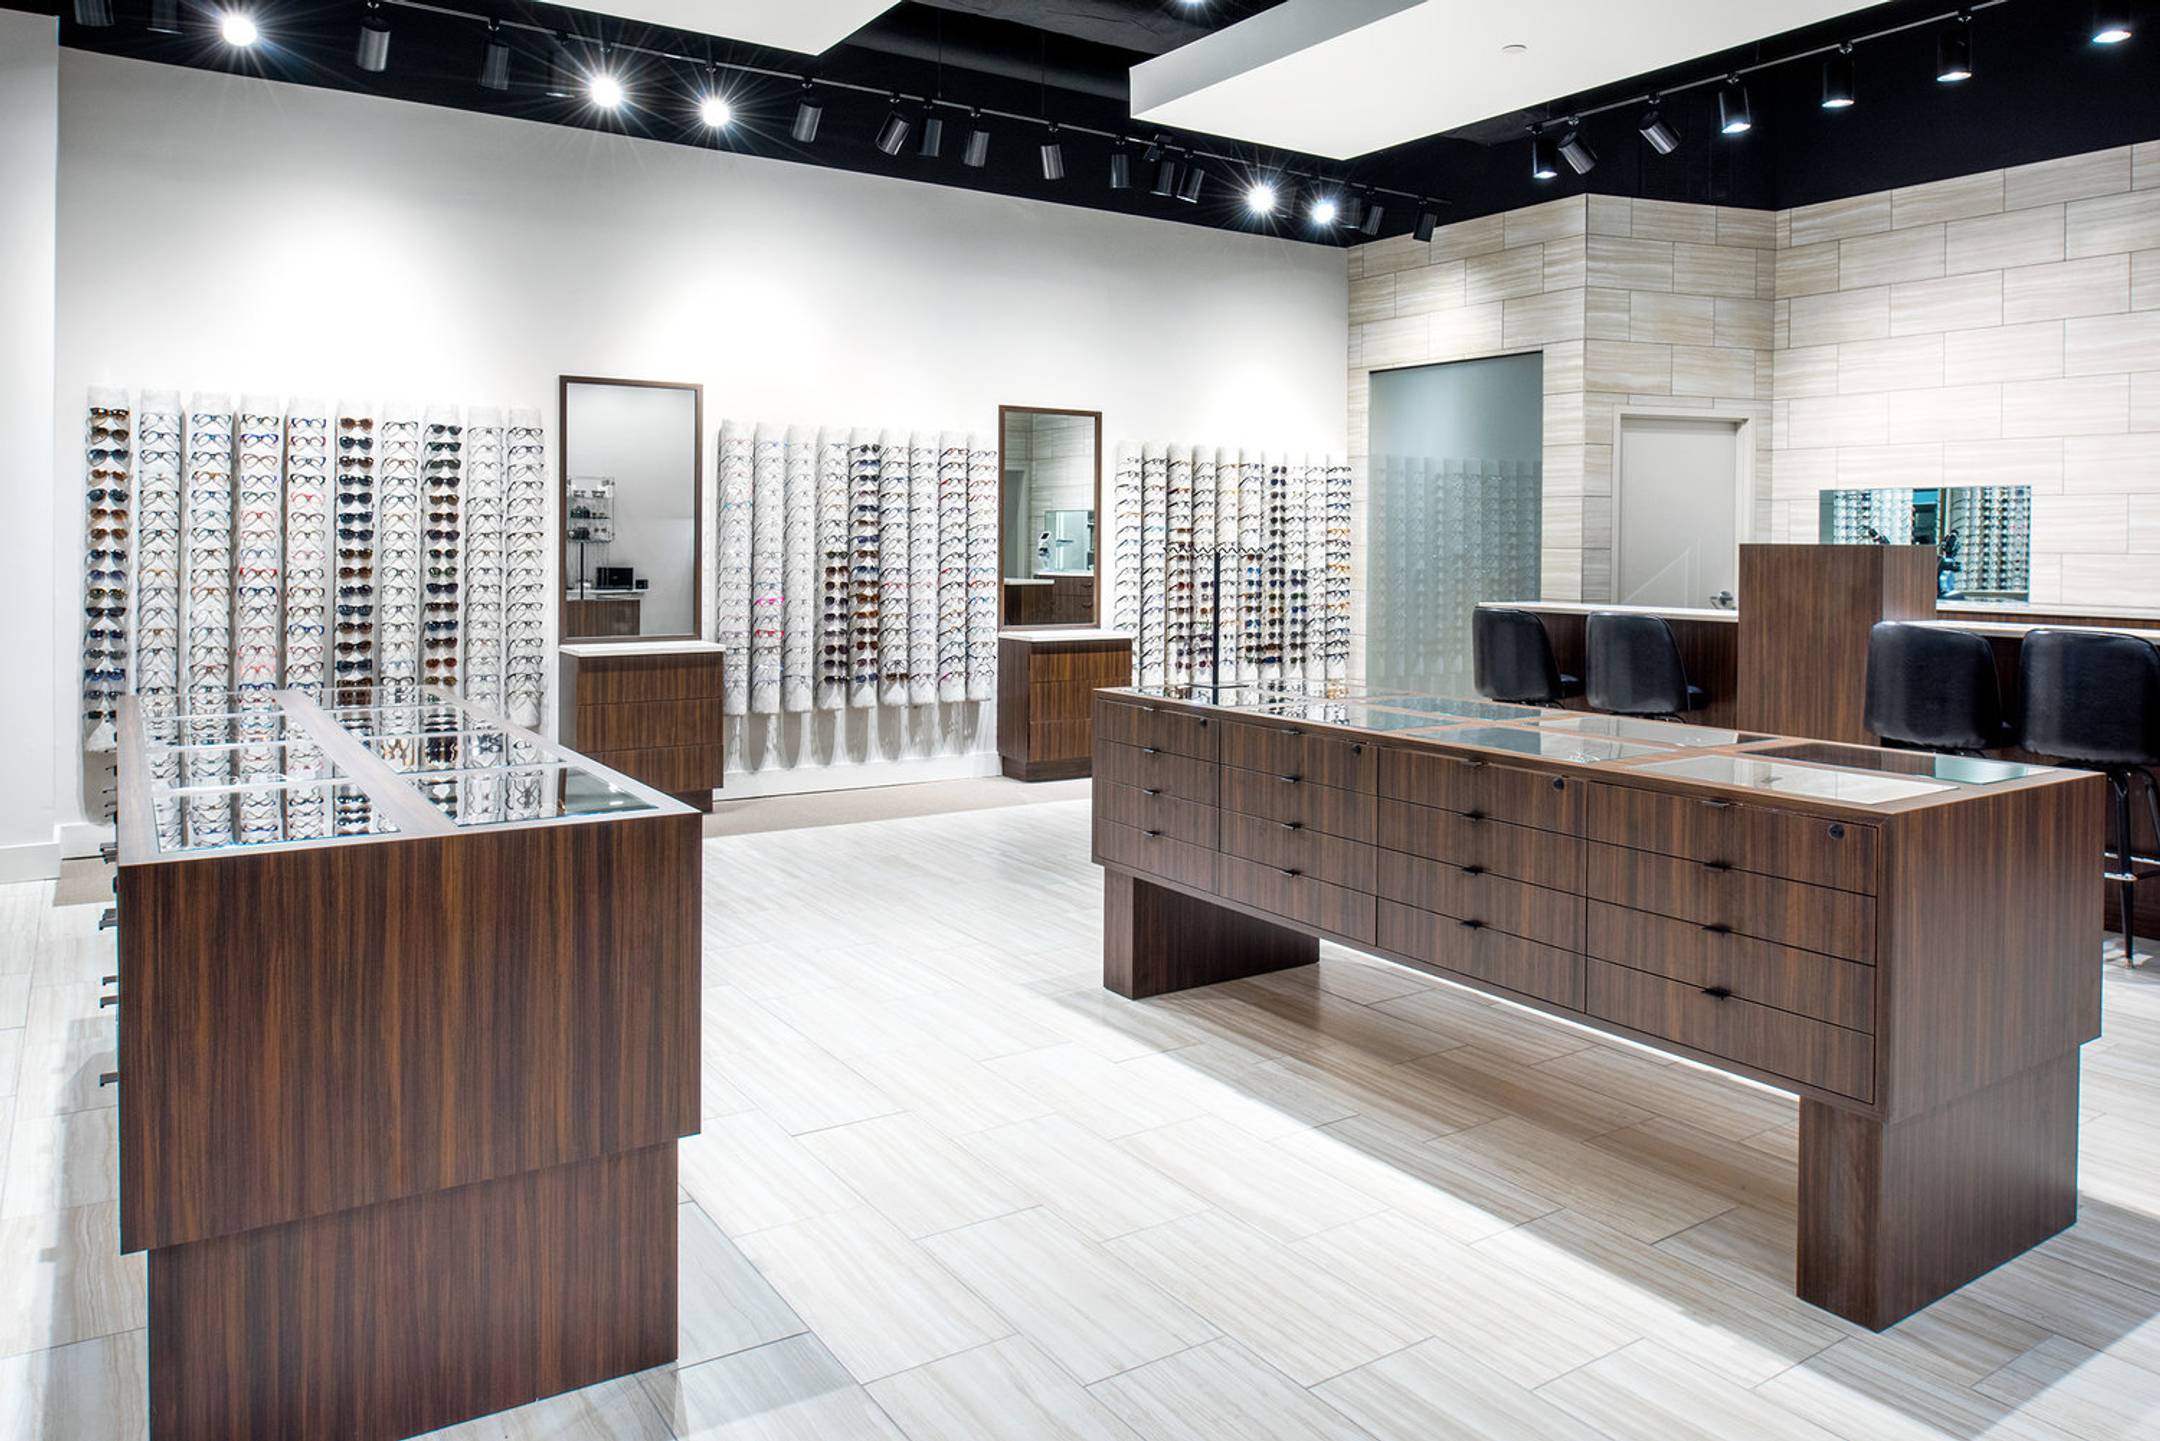 Salle Opticians store interior